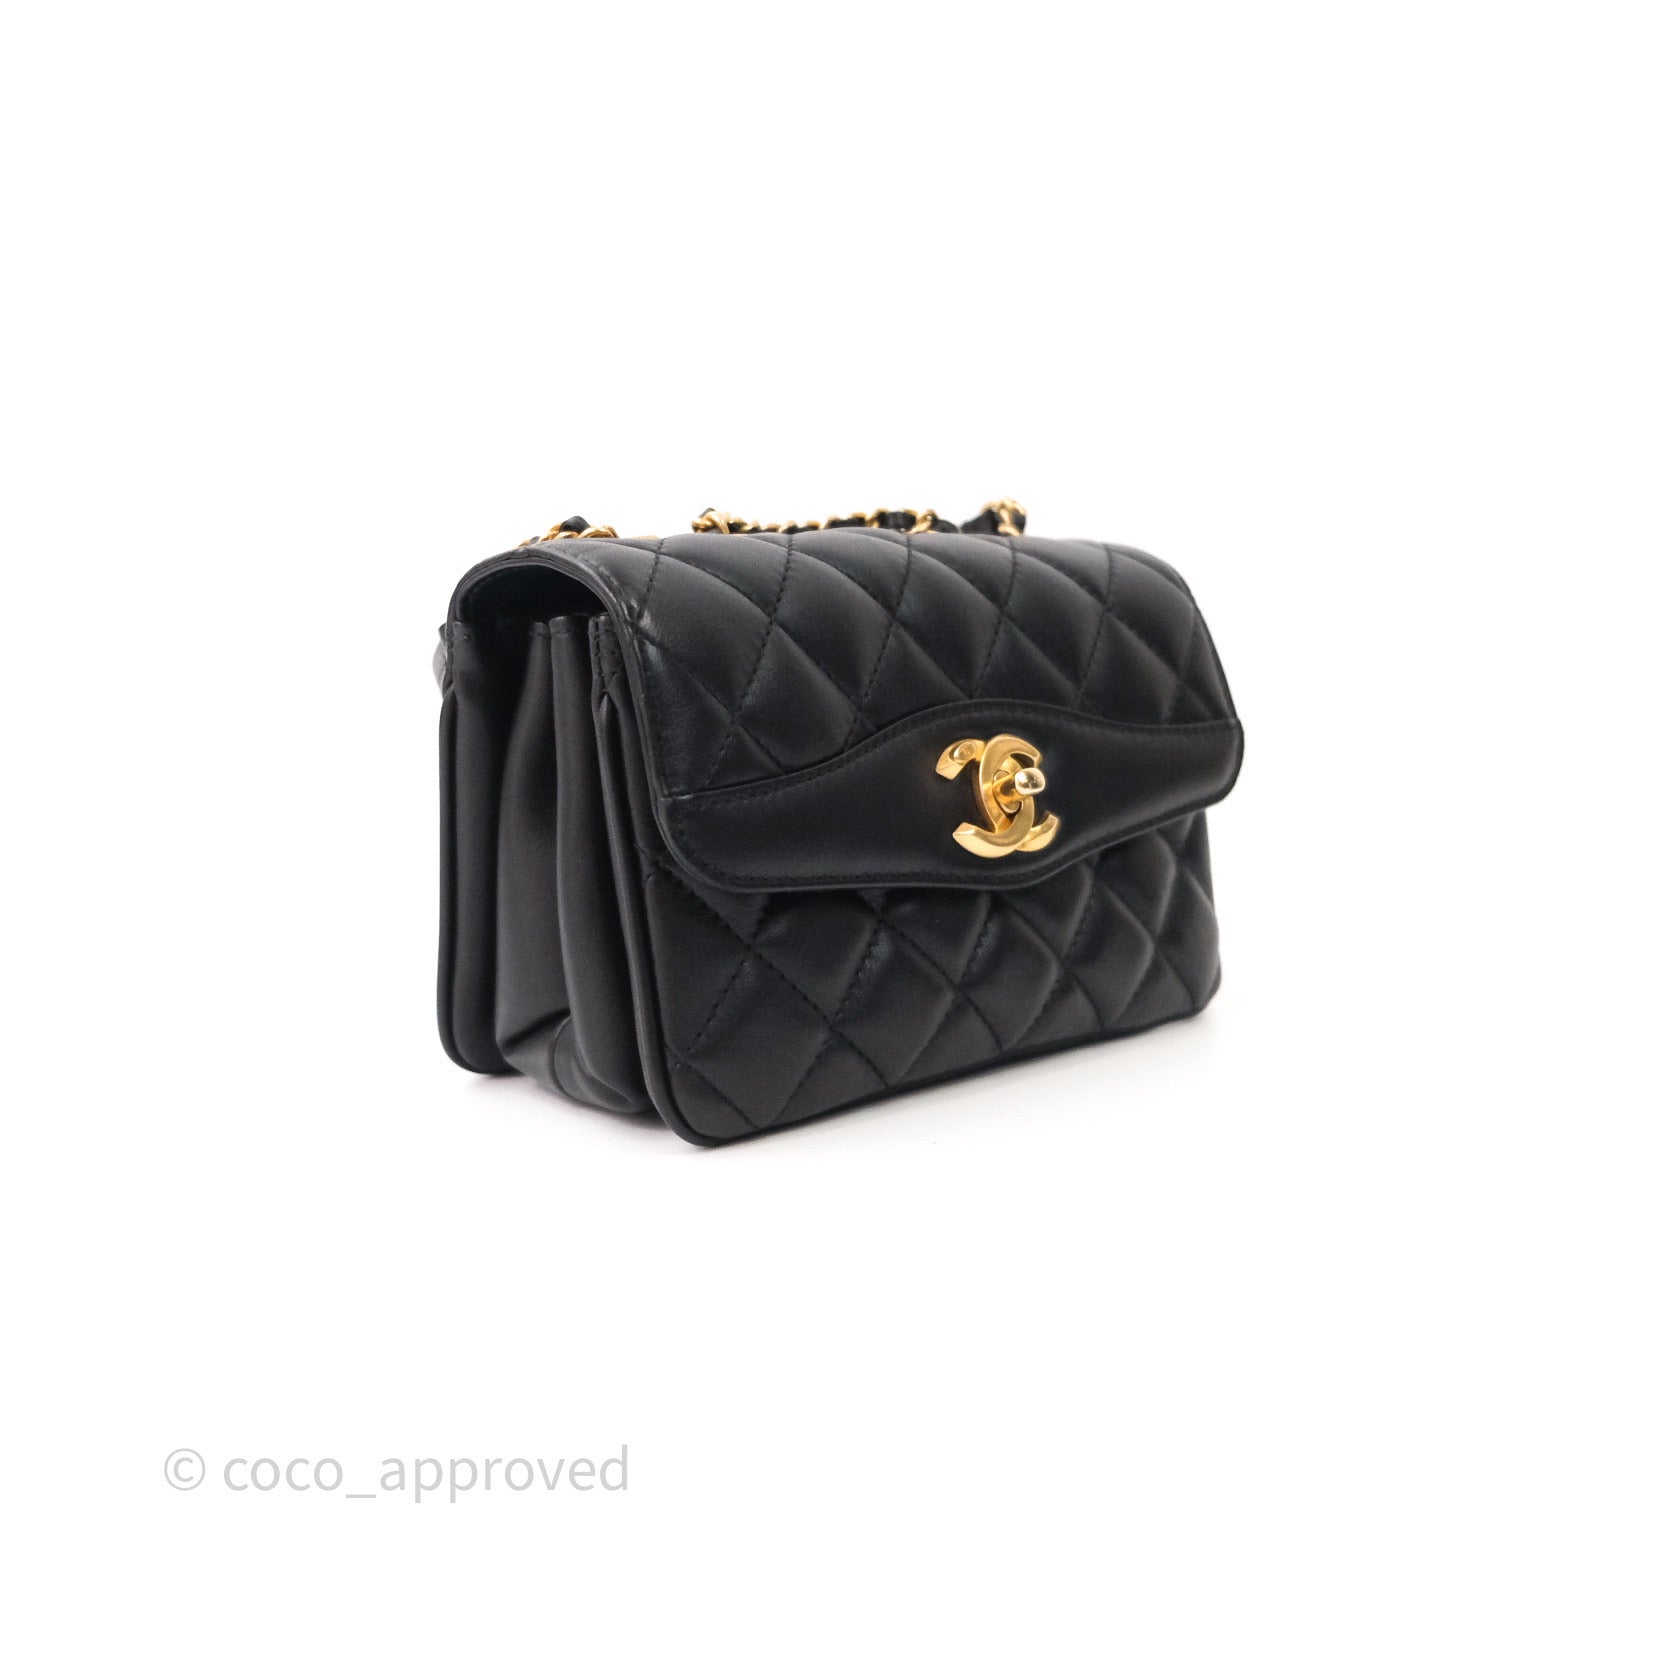 Chanel Coco Handle Mini (Small) 21P Caramel Brown Caviar Leather, Gold  Hardware, New in Box - Julia Rose Boston